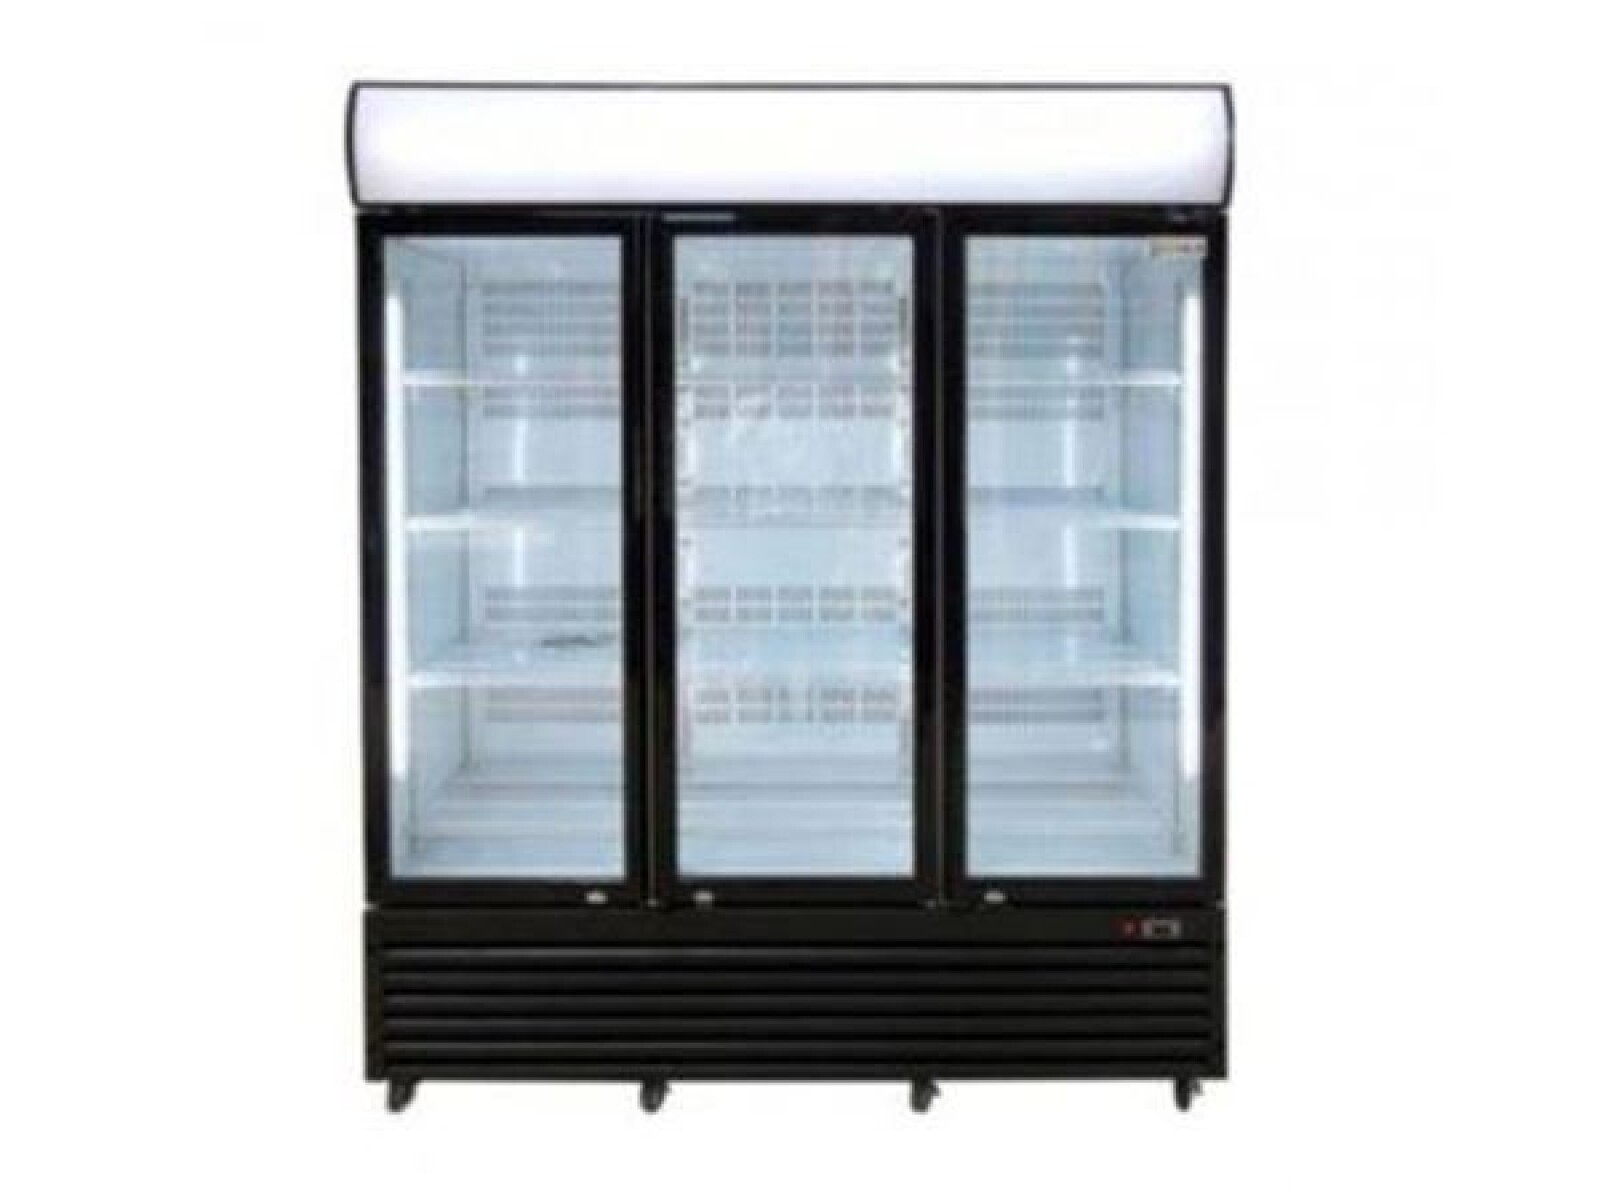 Expositor vertical refrigerado 3 puerta 900 lts Kuma 